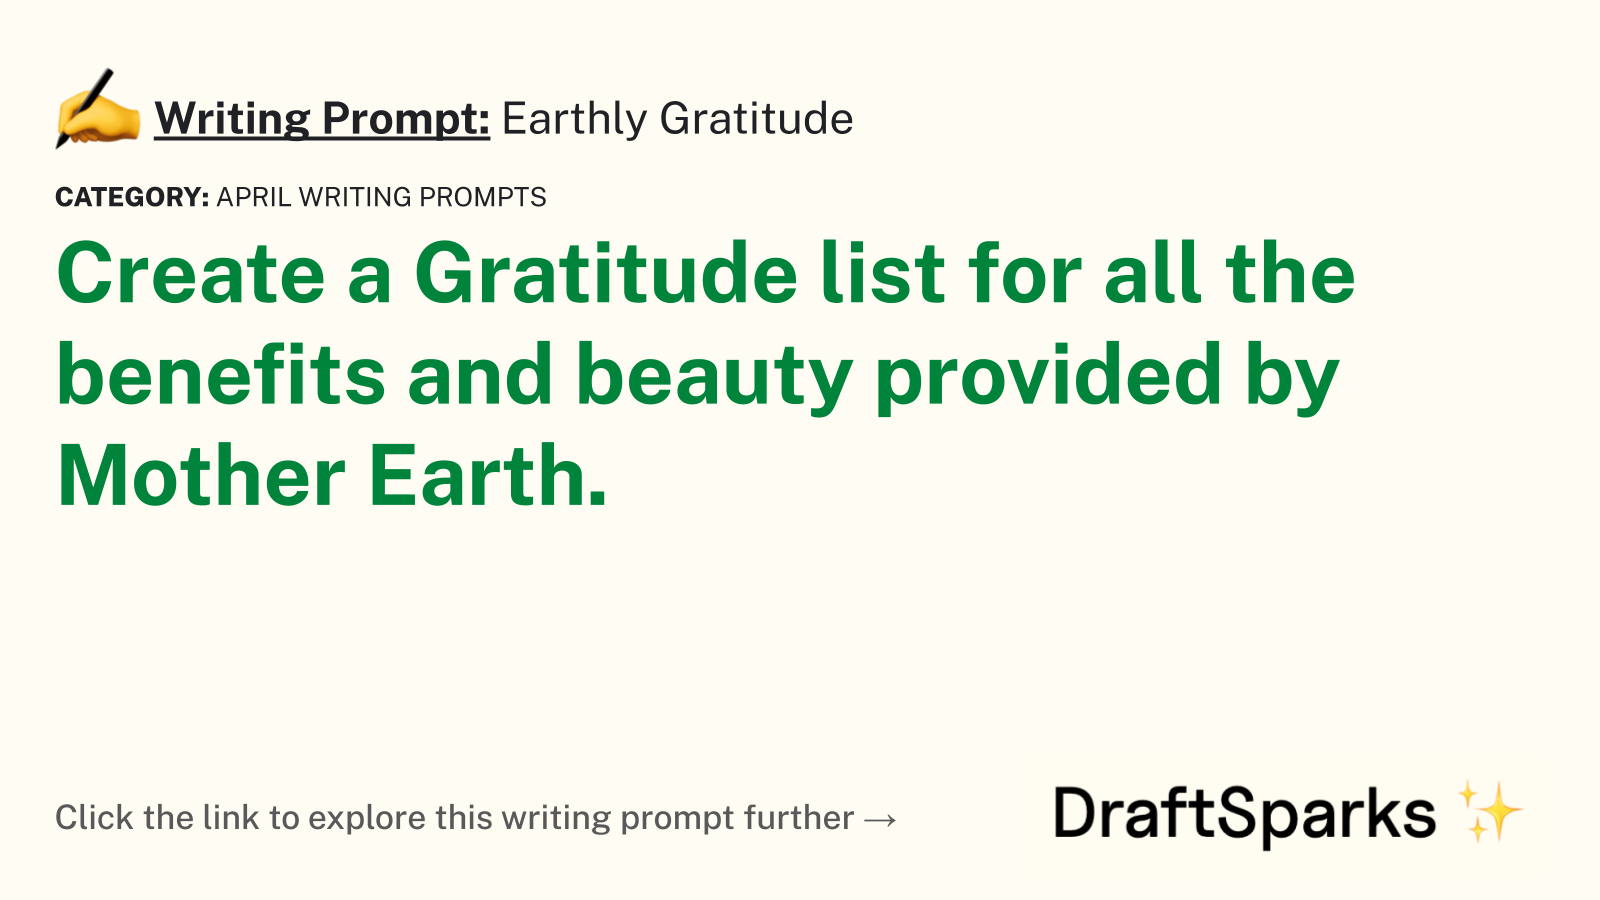 Earthly Gratitude